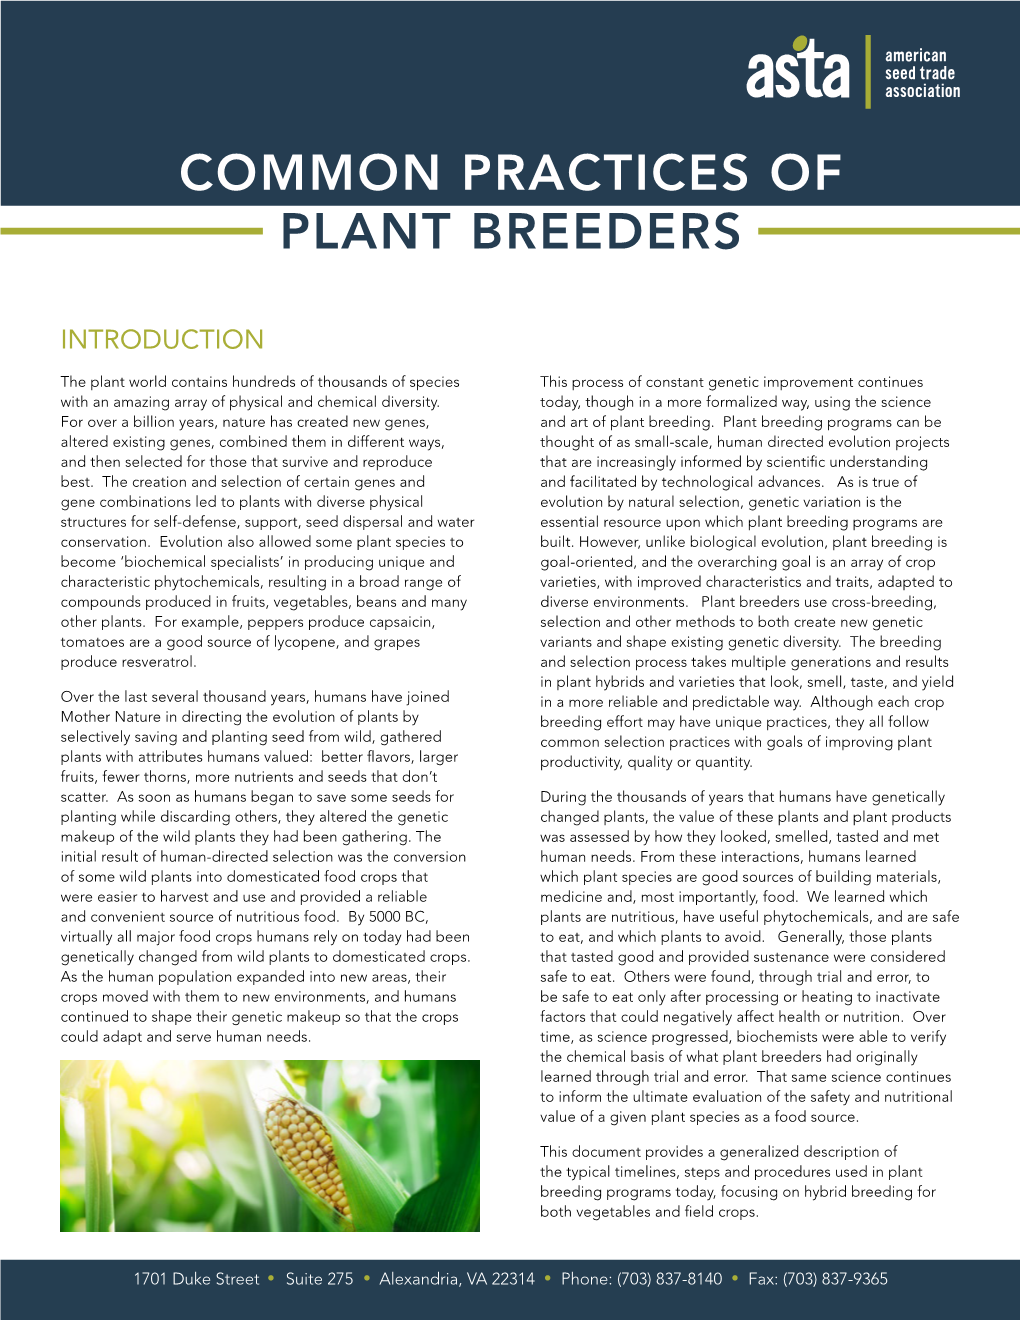 Common Practices of Plant Breeders